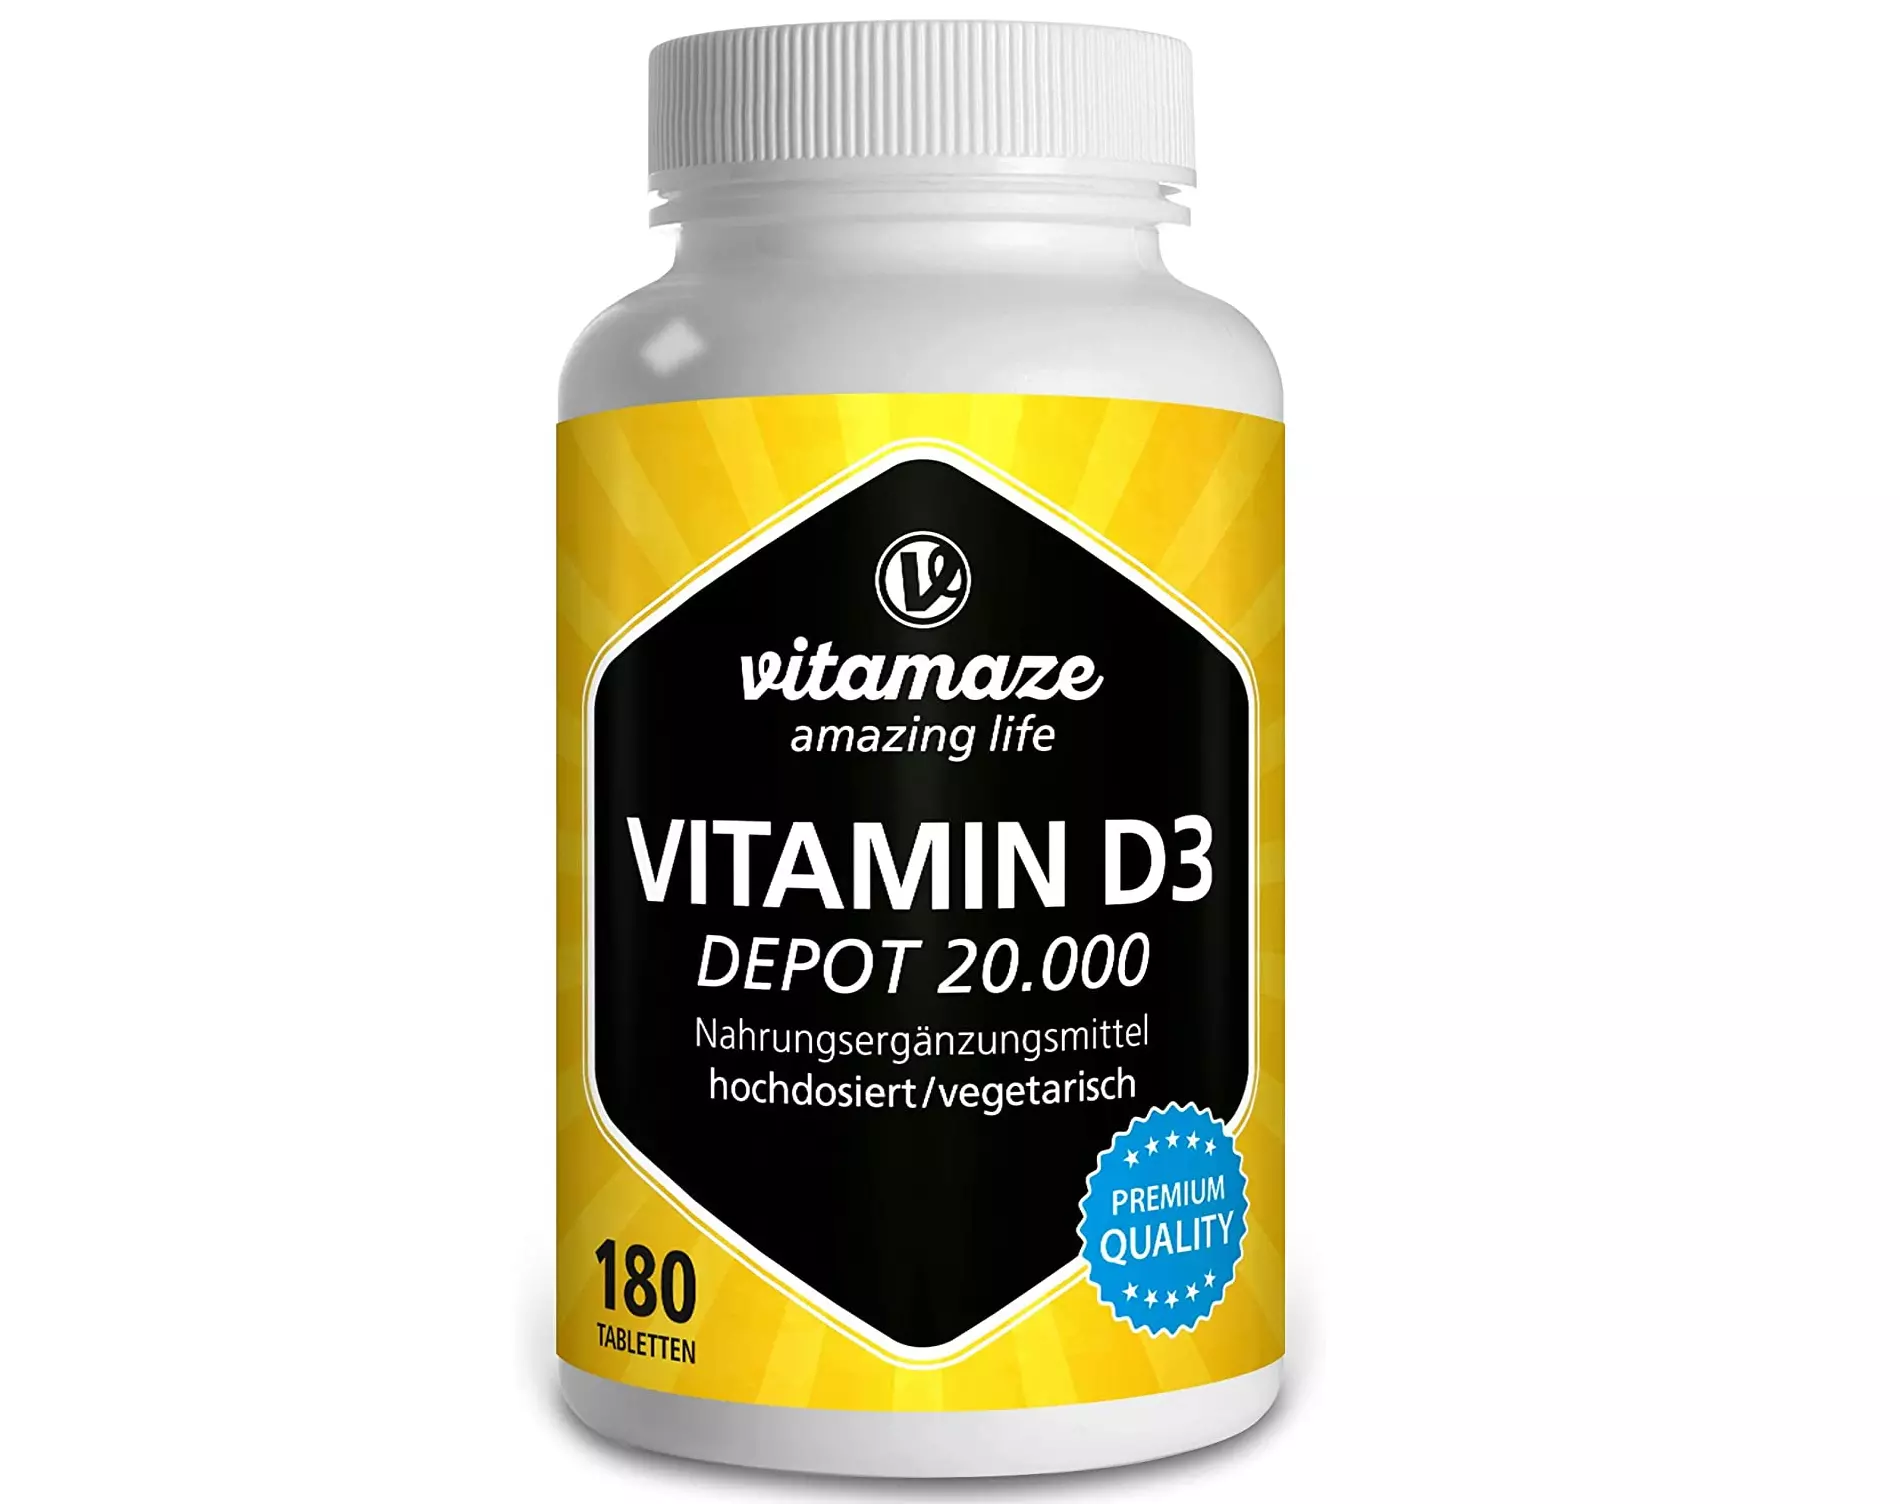 suplemento vitamina d Vitamaze